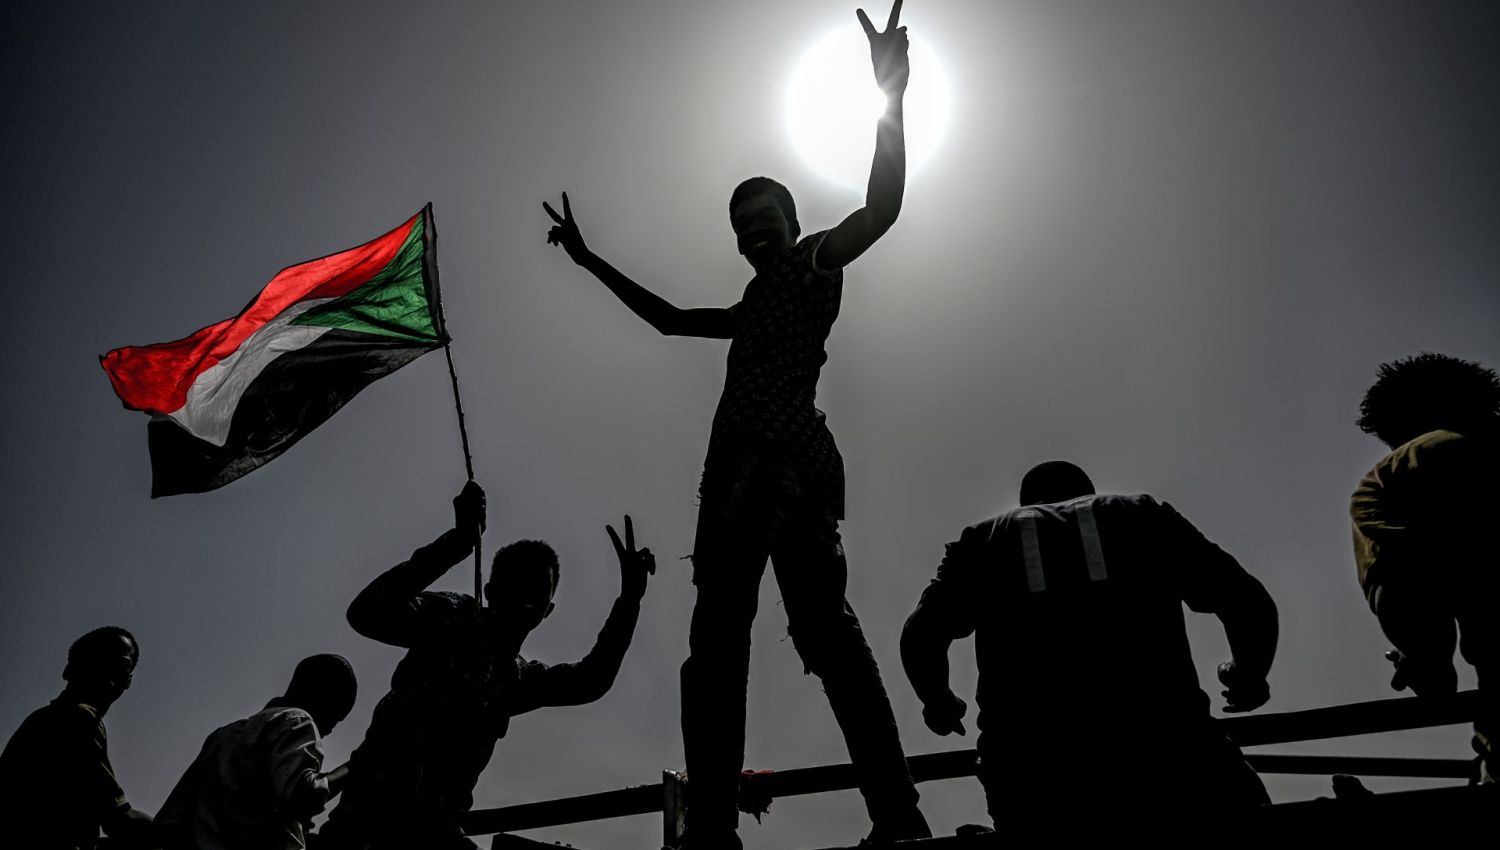 انقلاب السودان: العسكر هم الأقرب لإسرائيل وأمريكا